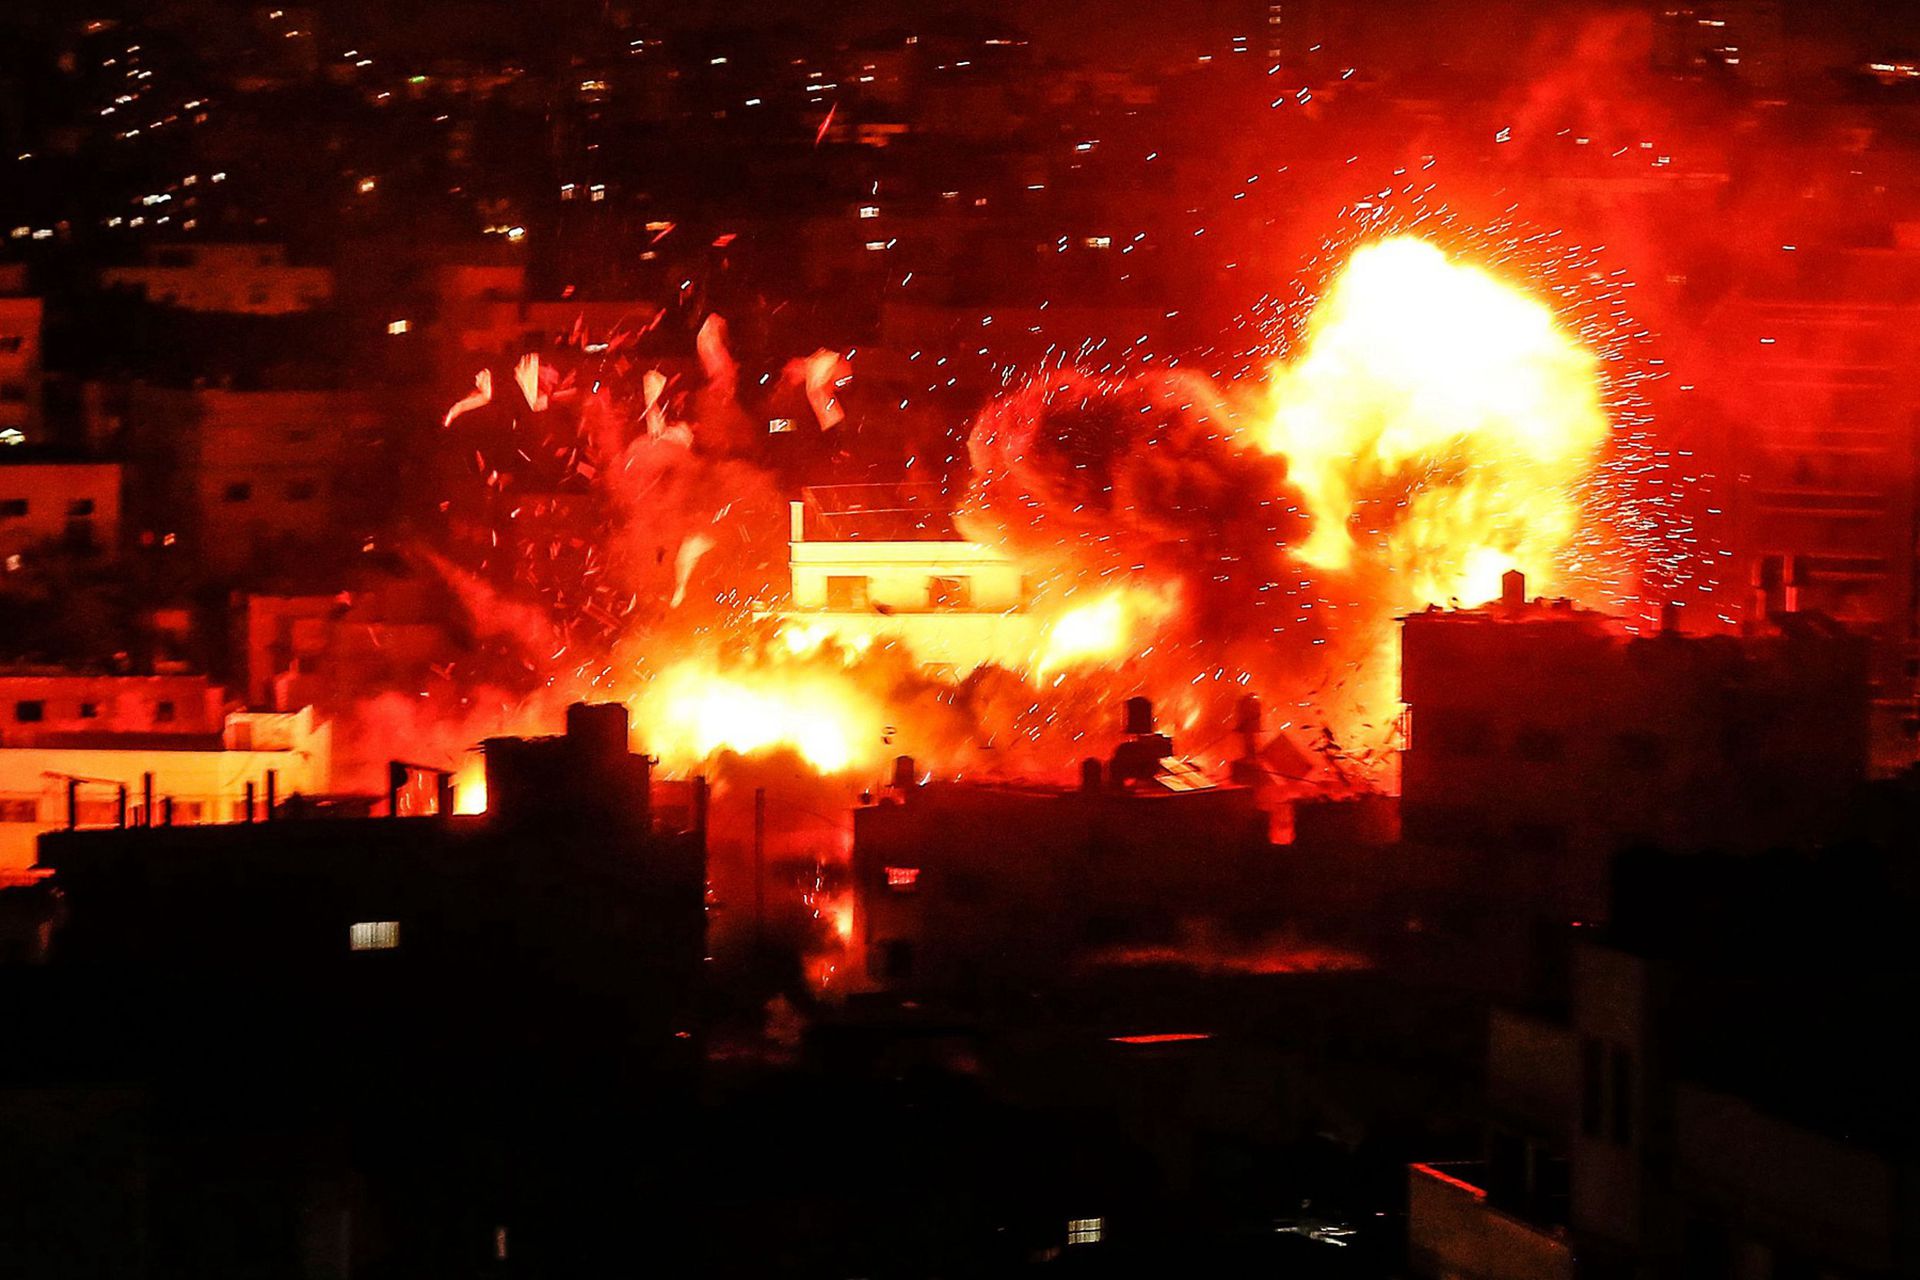 深夜，150枚火箭彈襲擊以色列，土耳其趁機宣戰，中東大變天？-圖2